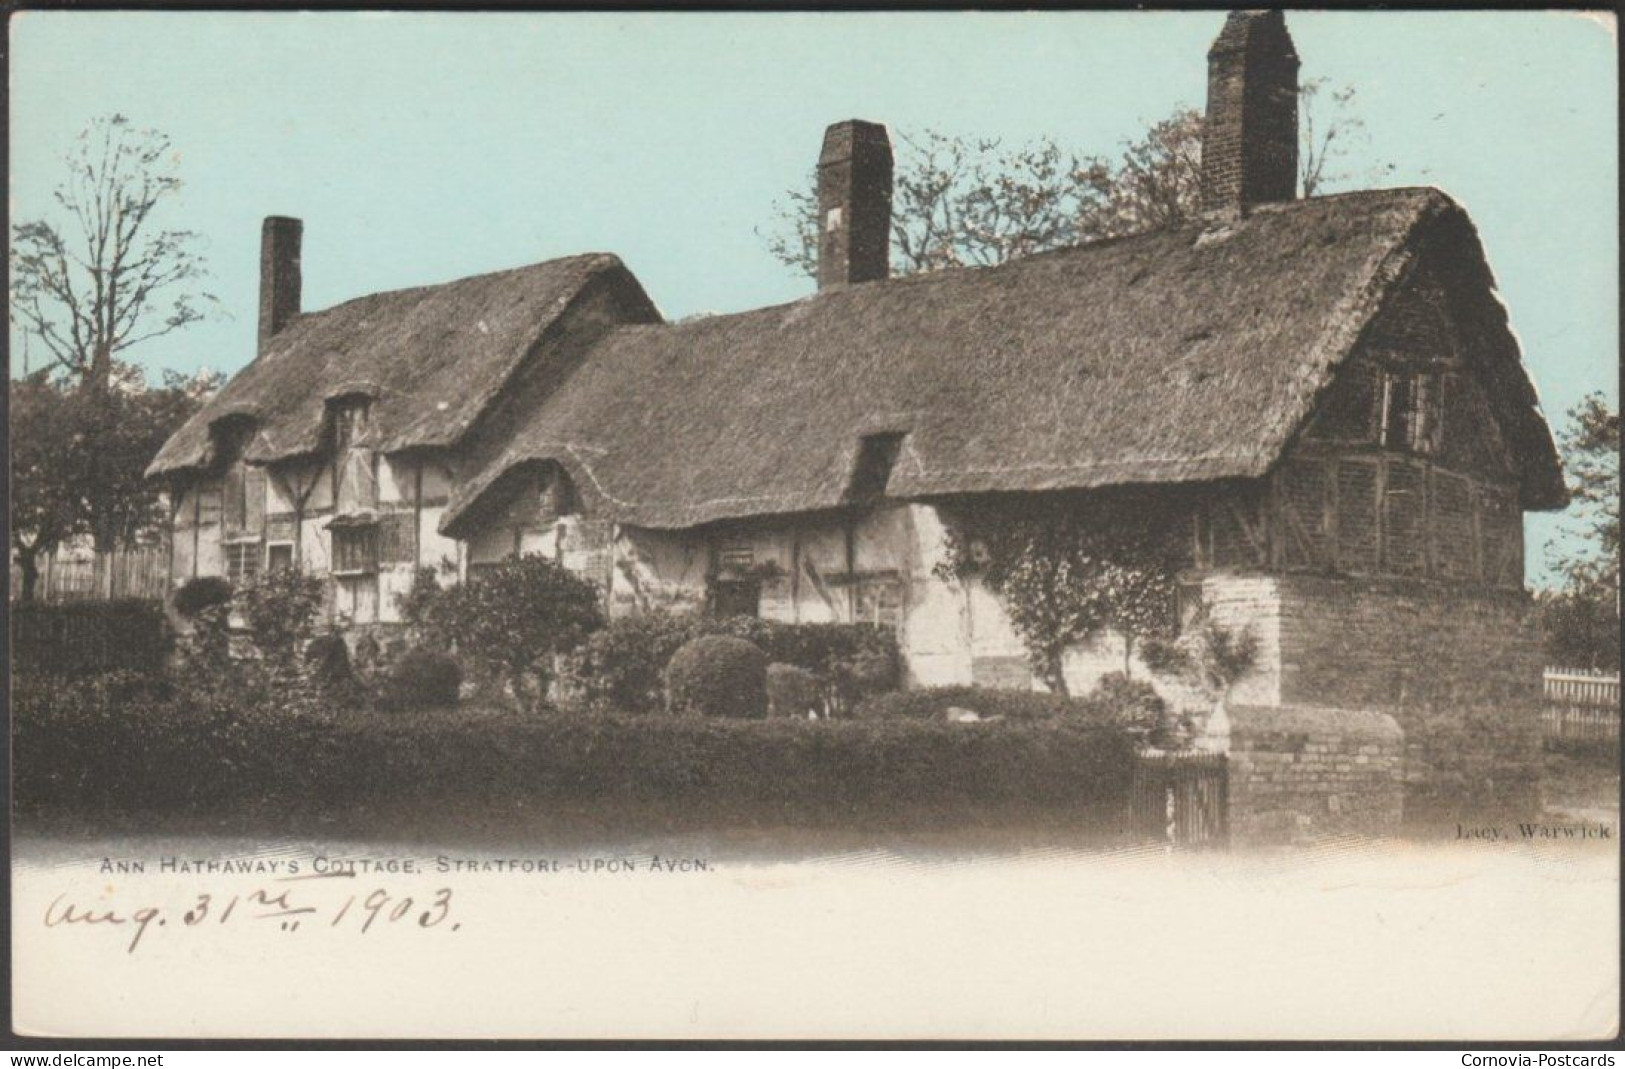 Ann Hathaway's Cottage, Stratford-upon-Avon, 1903 - HH Lacy Postcard - Stratford Upon Avon